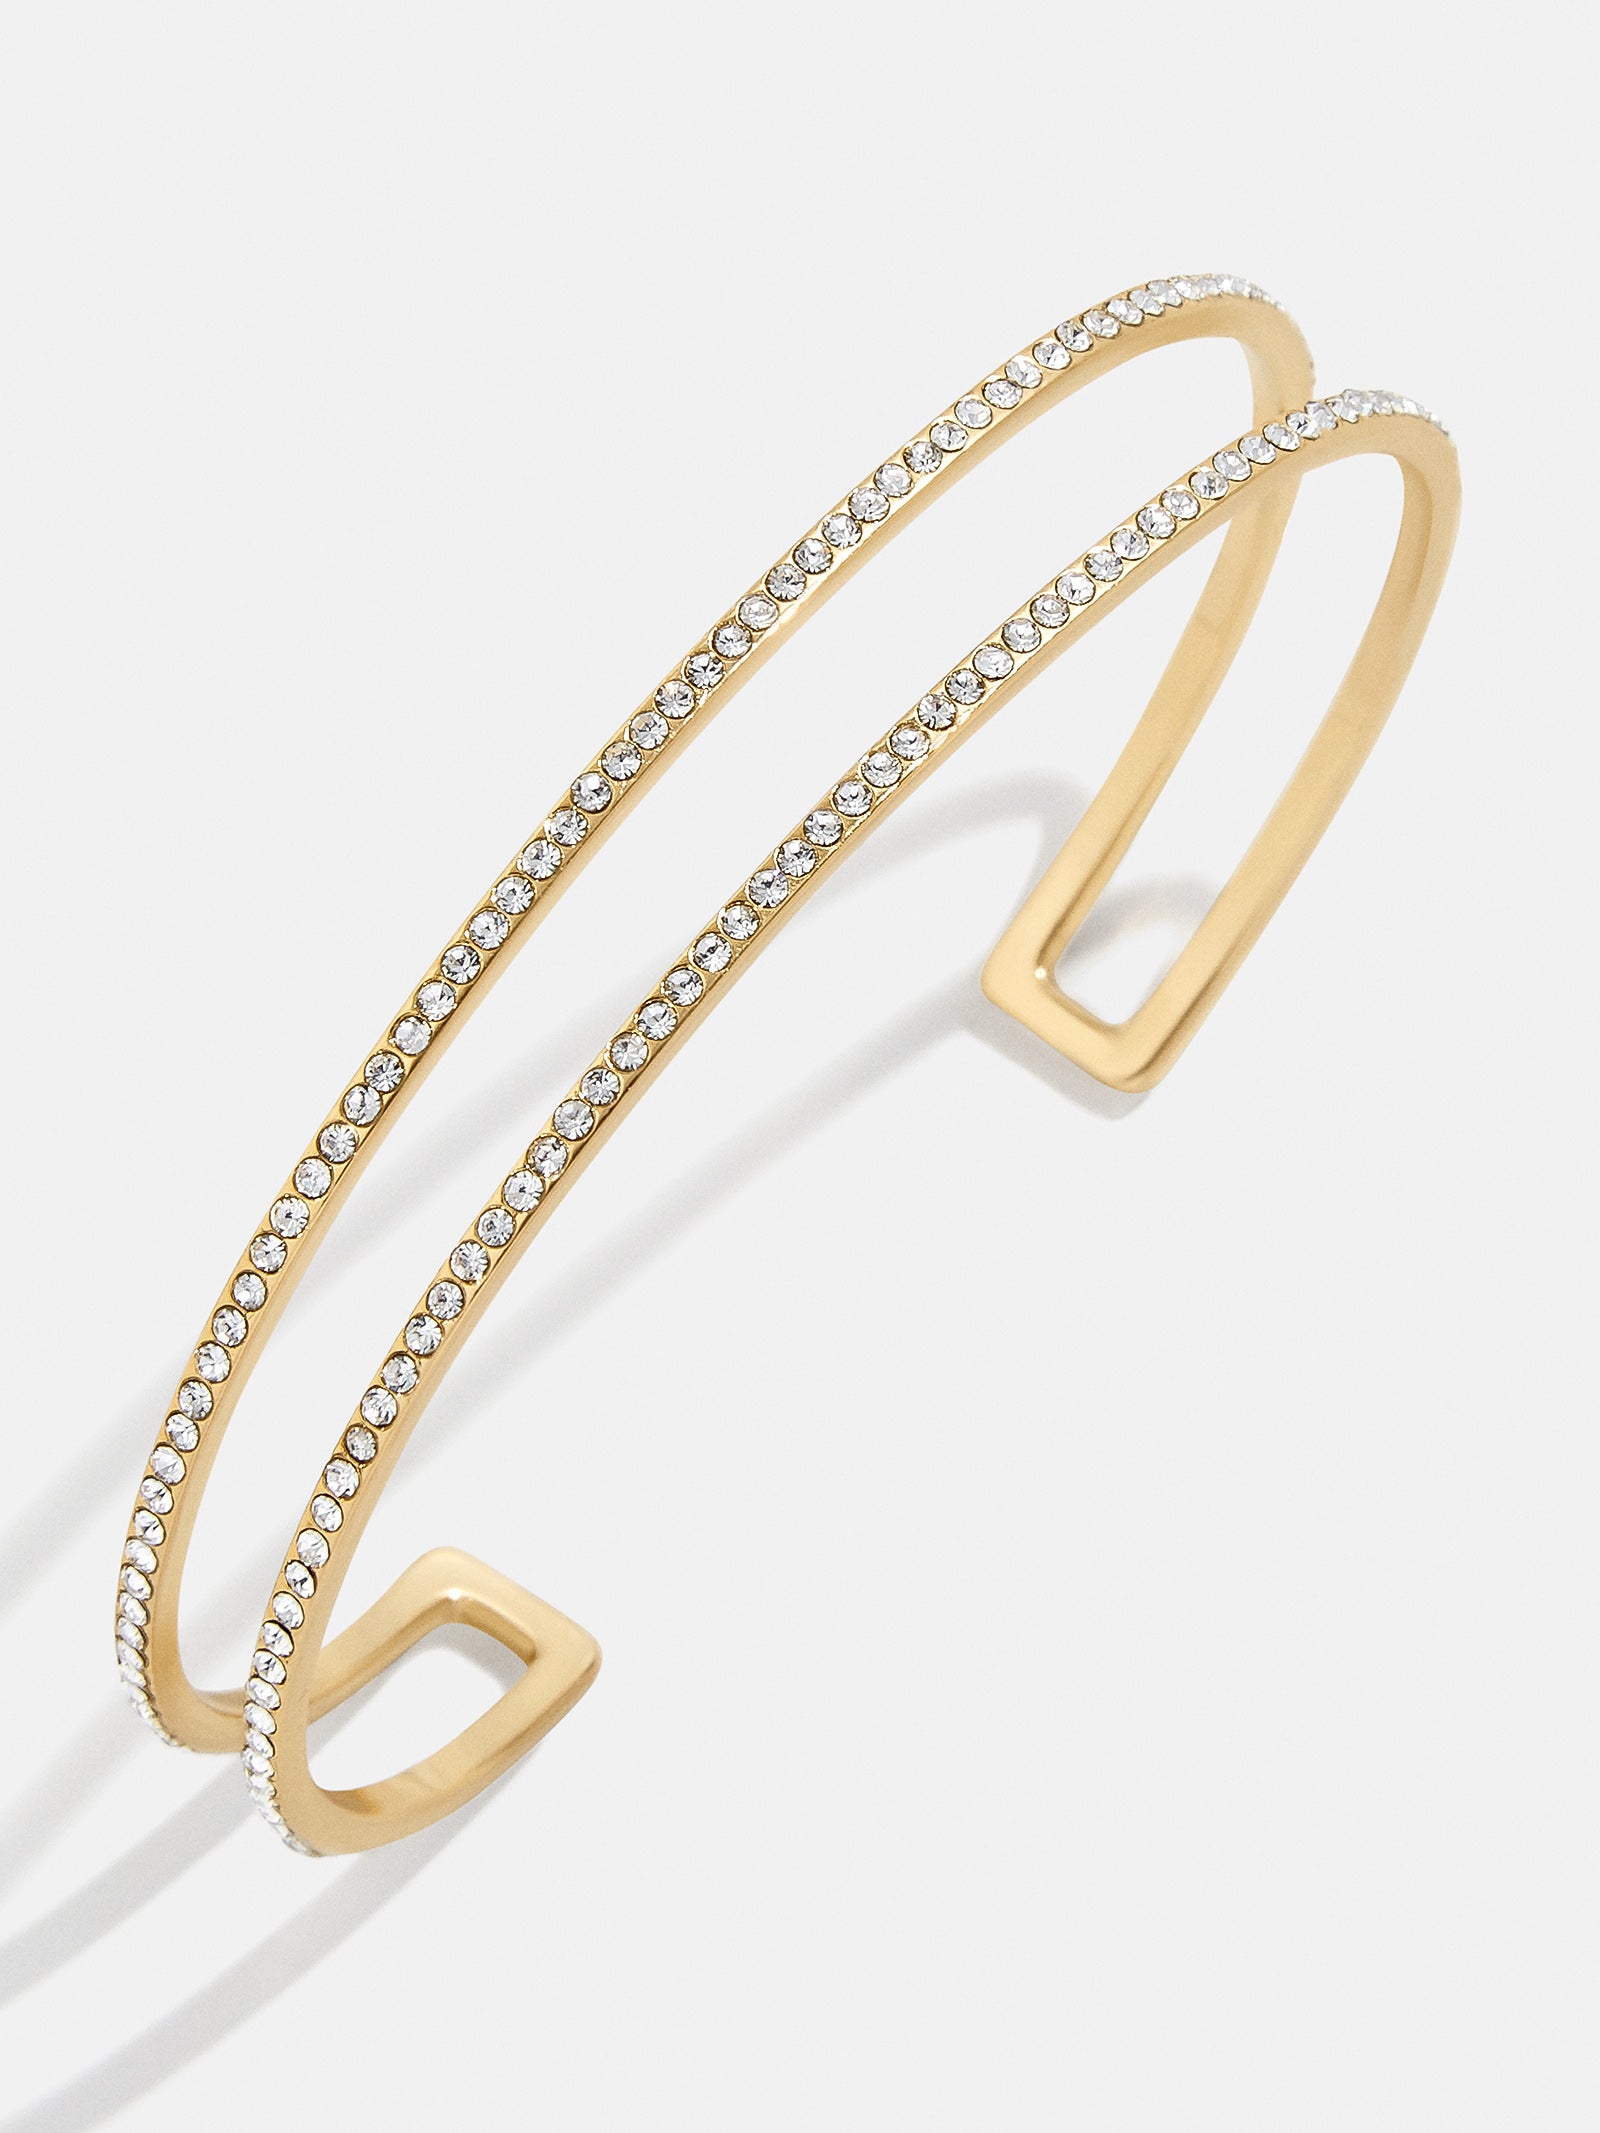 Baublebar Arlo Set of 2 Cuff Bracelets in Gold